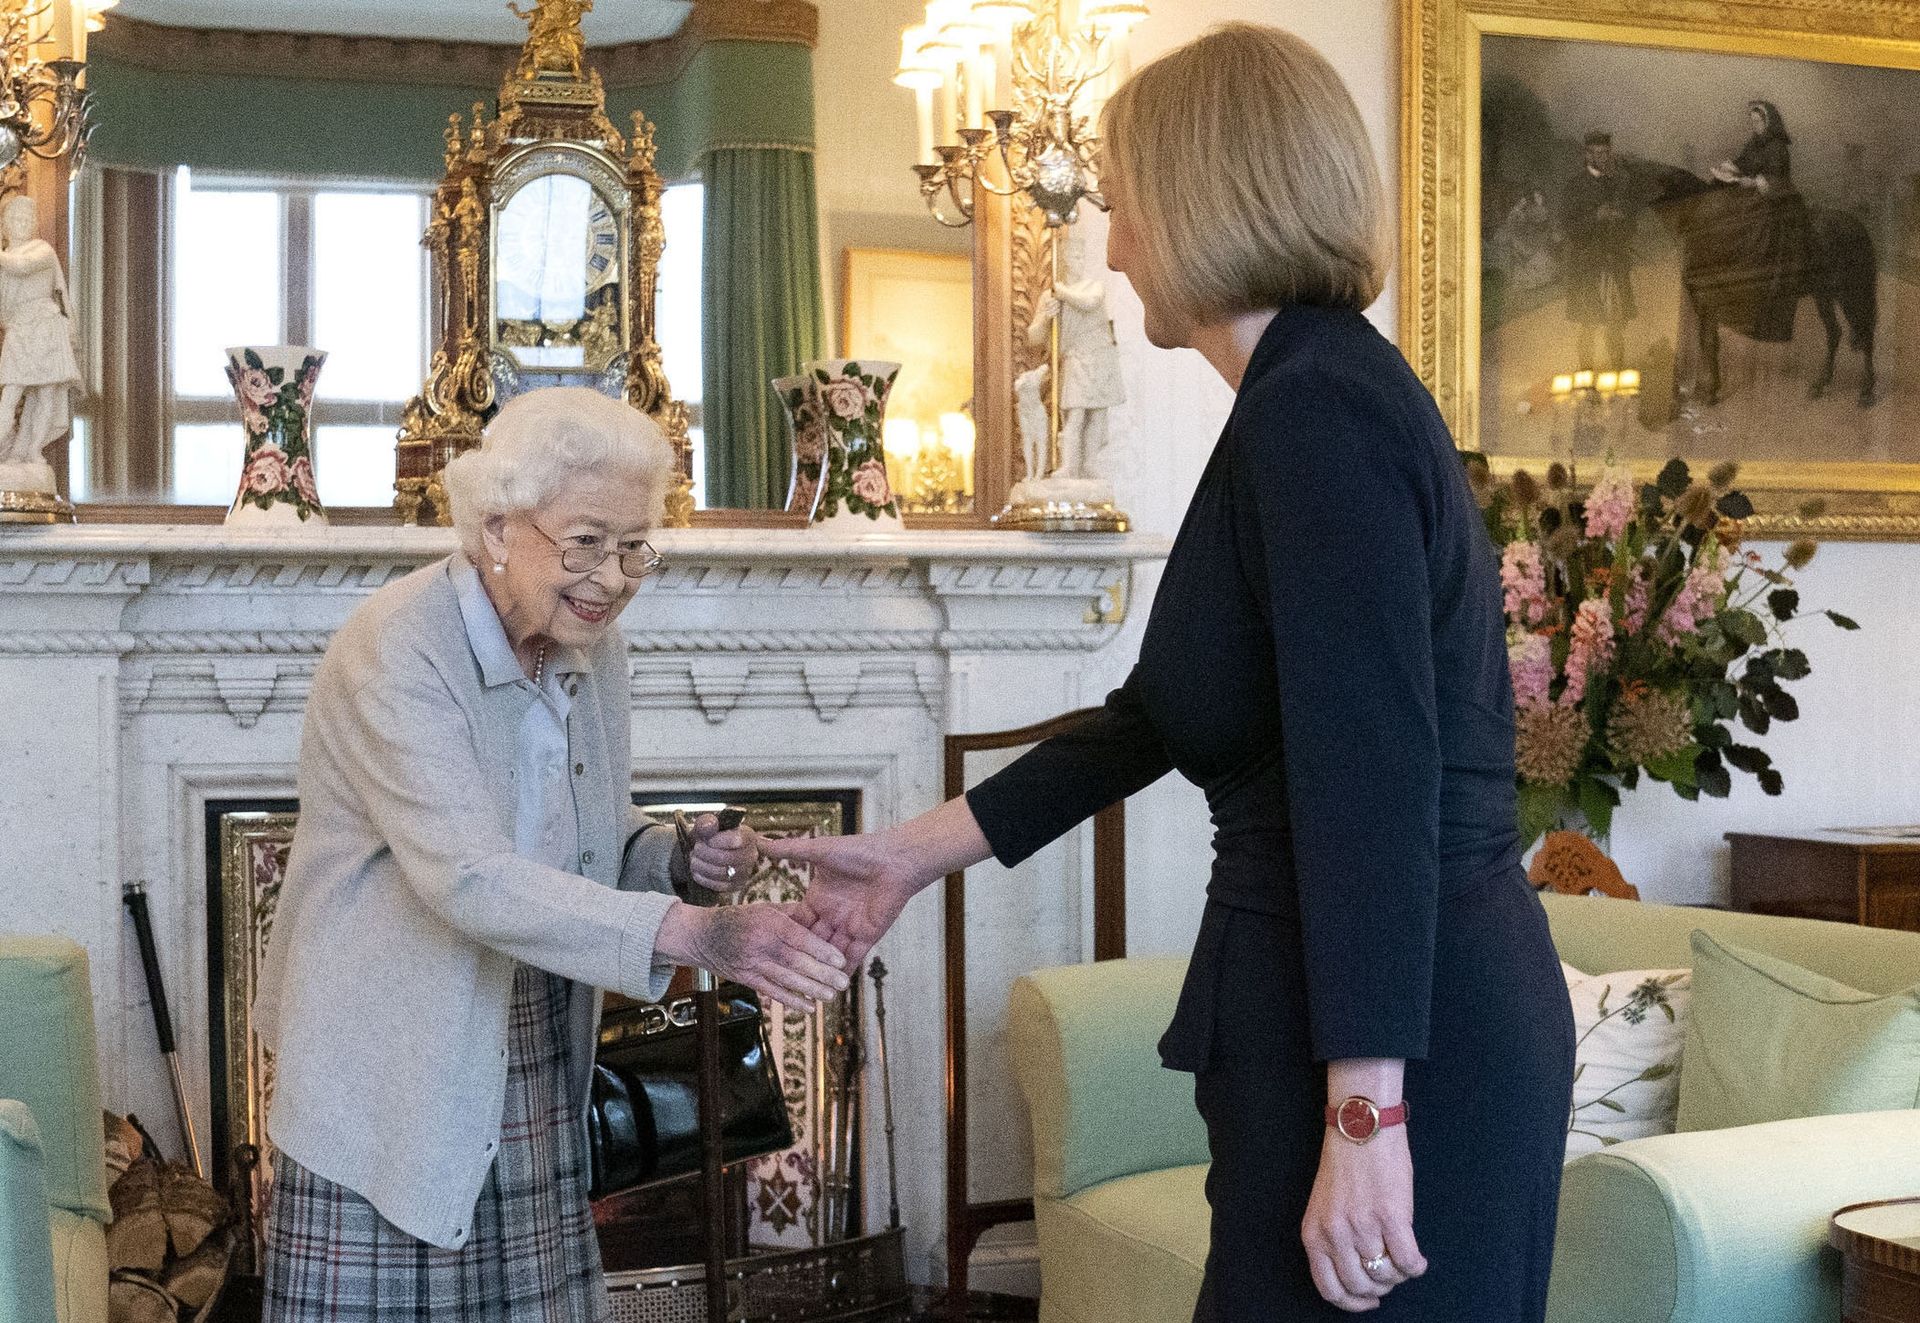 6 septembre 2022, château de Balmoral, la Reine reçoit le nouveau Premier ministre britannique, Liz Truss… Professionnelle jusqu’au bout.